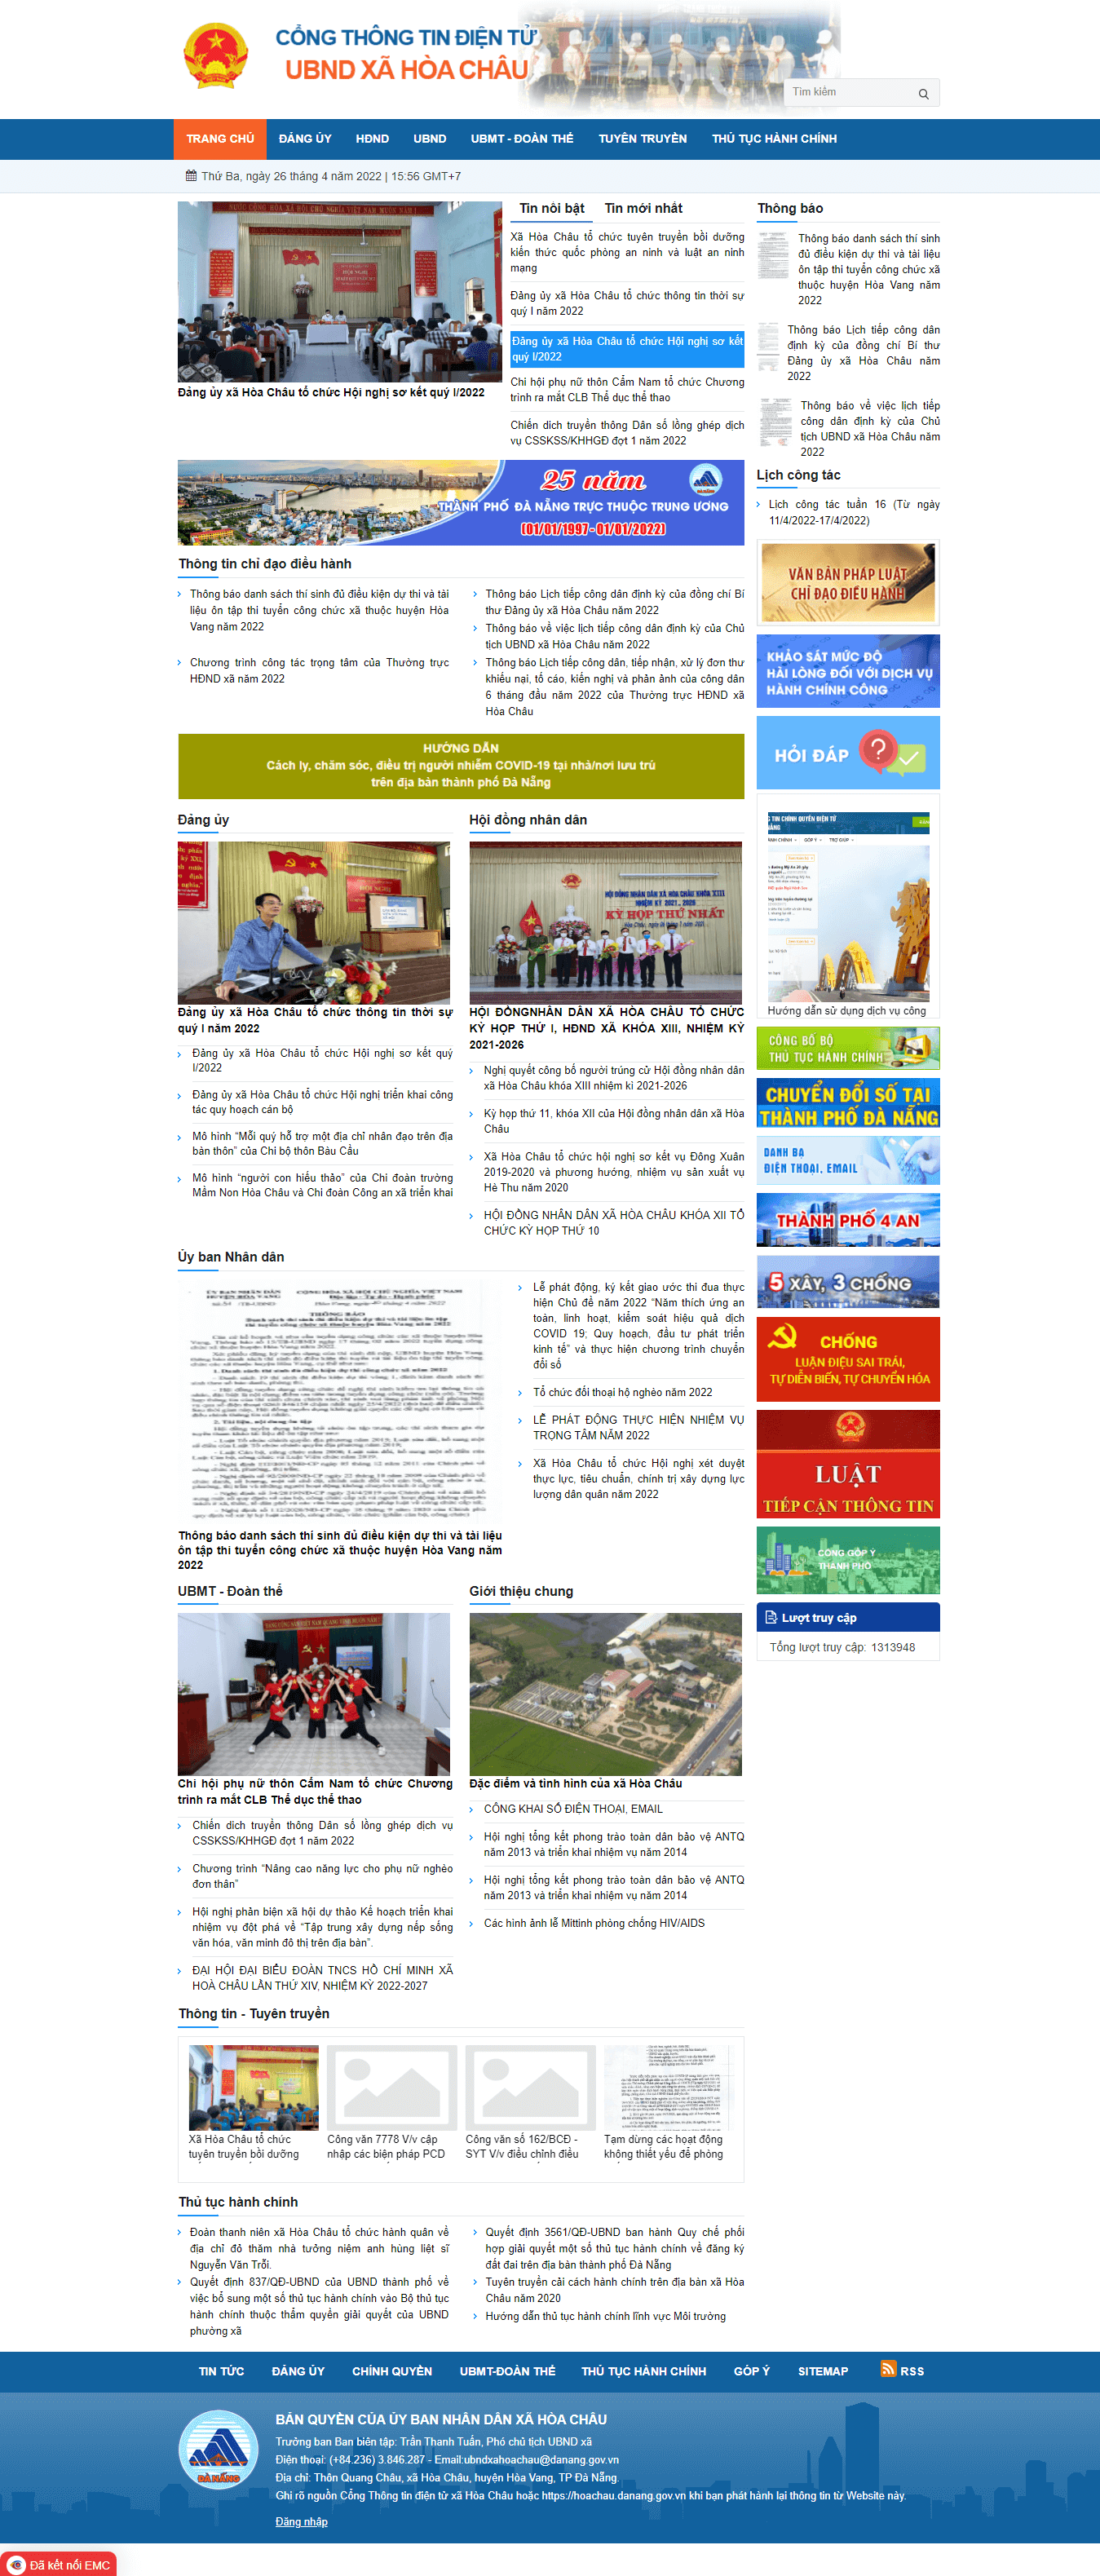 Mẫu website cổng thông tin điện tử – UBND xã Hòa Châu